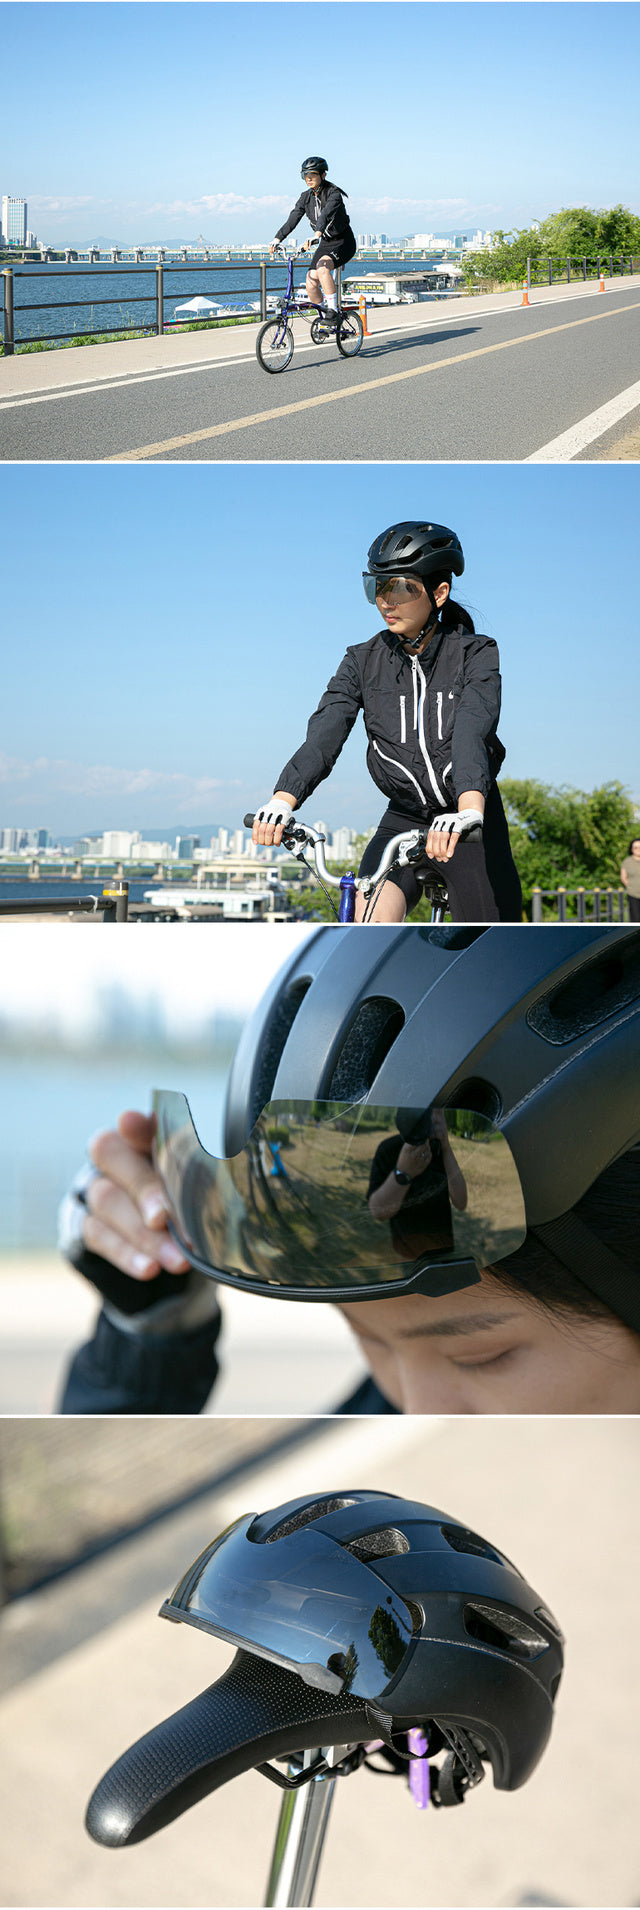 ヘルメット取付型スポーツゴーグル X大人用フレームブラック